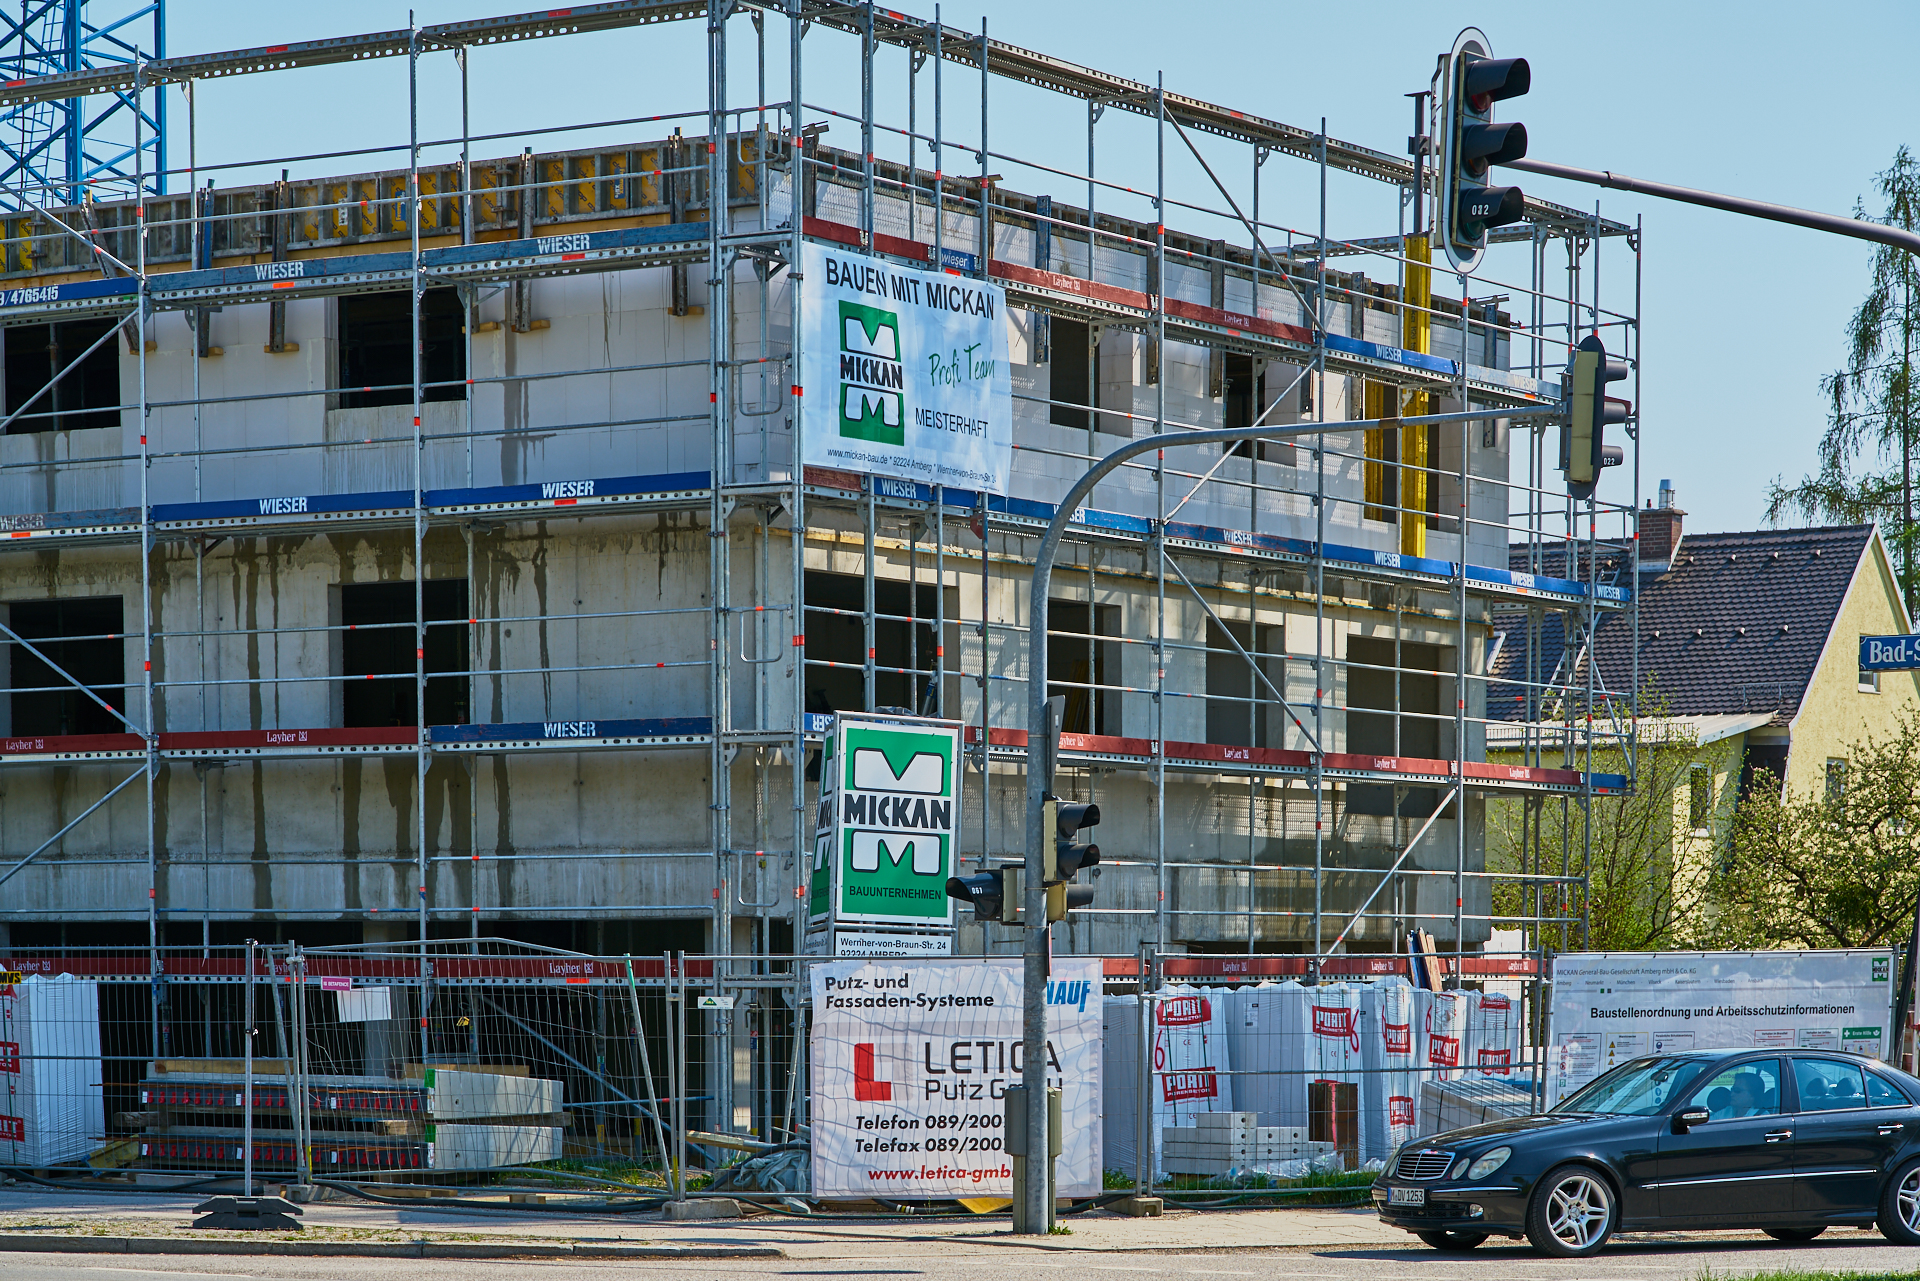 19.04.2018 - Baustelle Maikäfersiedlung in der Bad Schachener Straße in Neuperlach